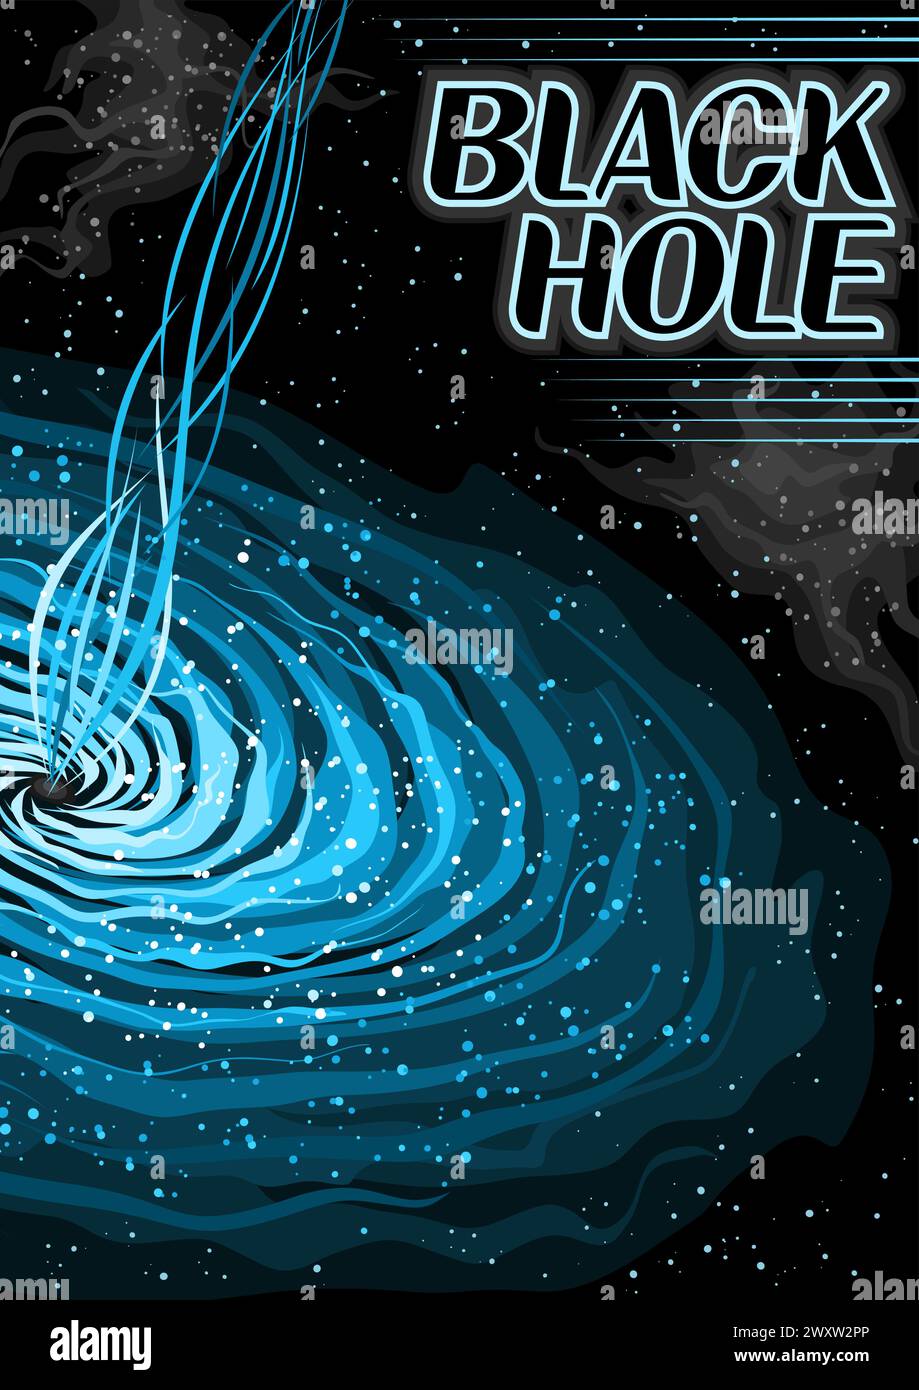 Affiche vectorielle pour Black Hole, bannière verticale avec illustration de nuages de plasma tournants autour du pulsar et des jets d'art de ligne sur fond étoilé noir, d Illustration de Vecteur